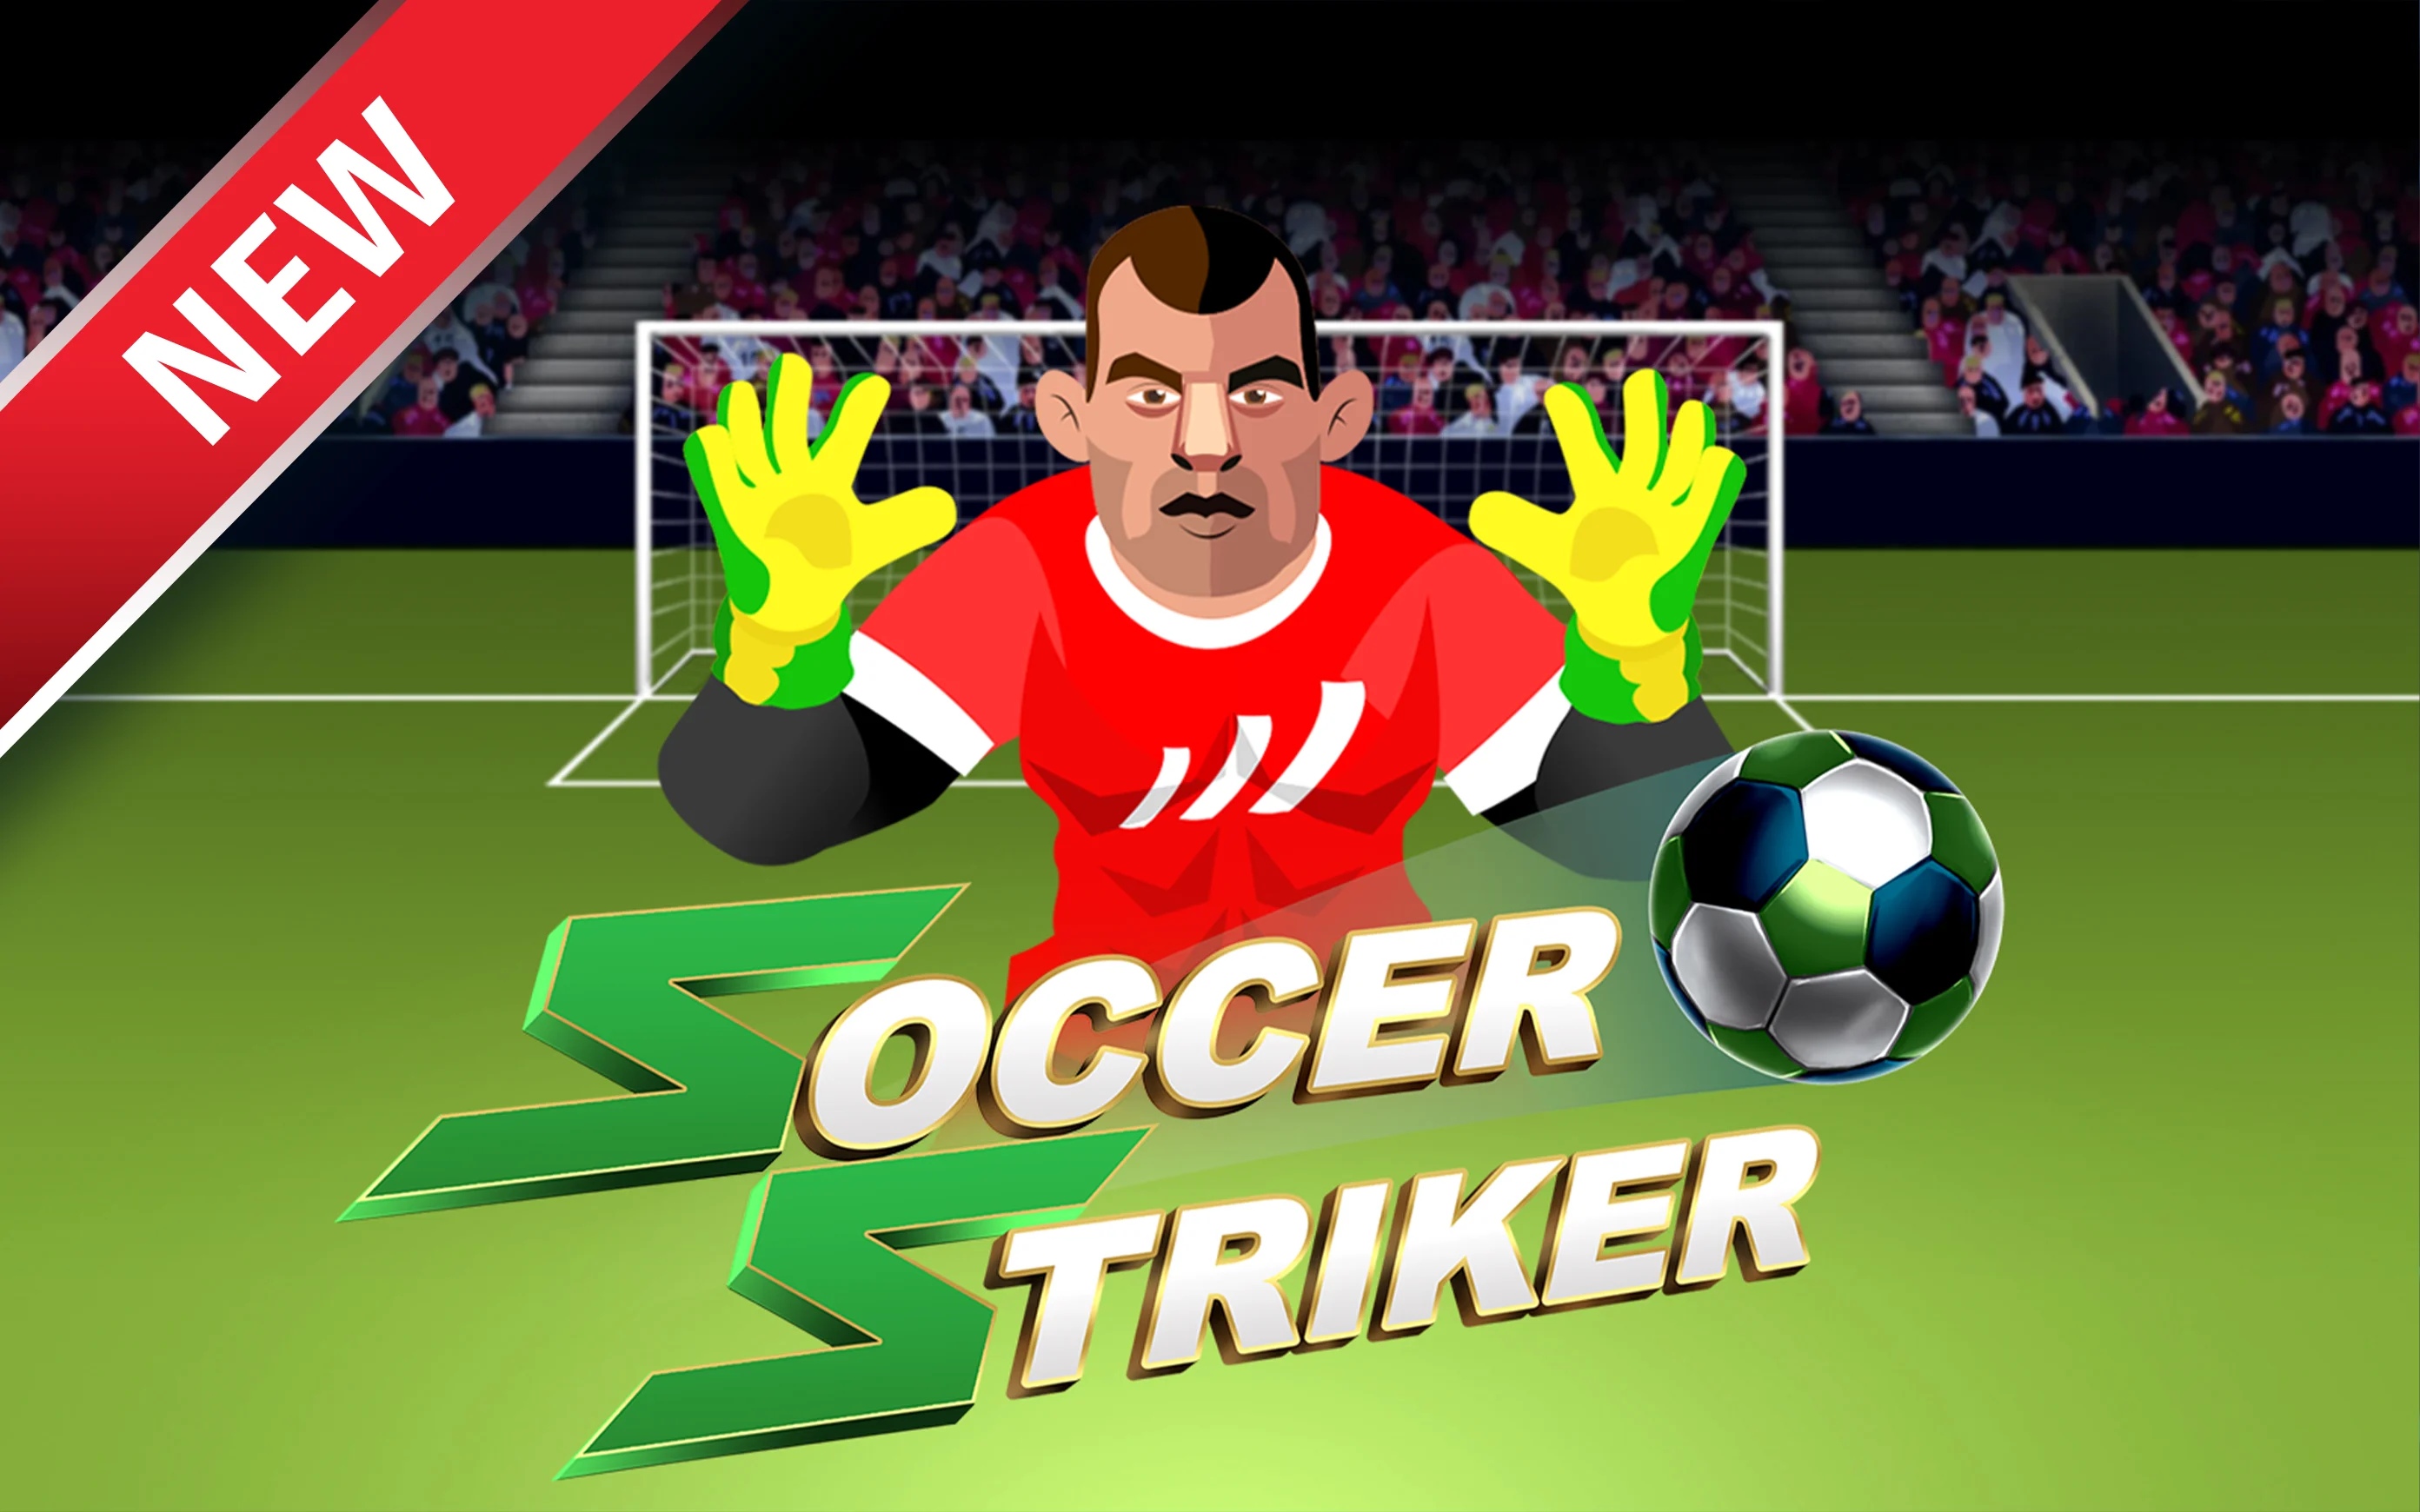 Starcasino.be online casino üzerinden Soccer Striker oynayın